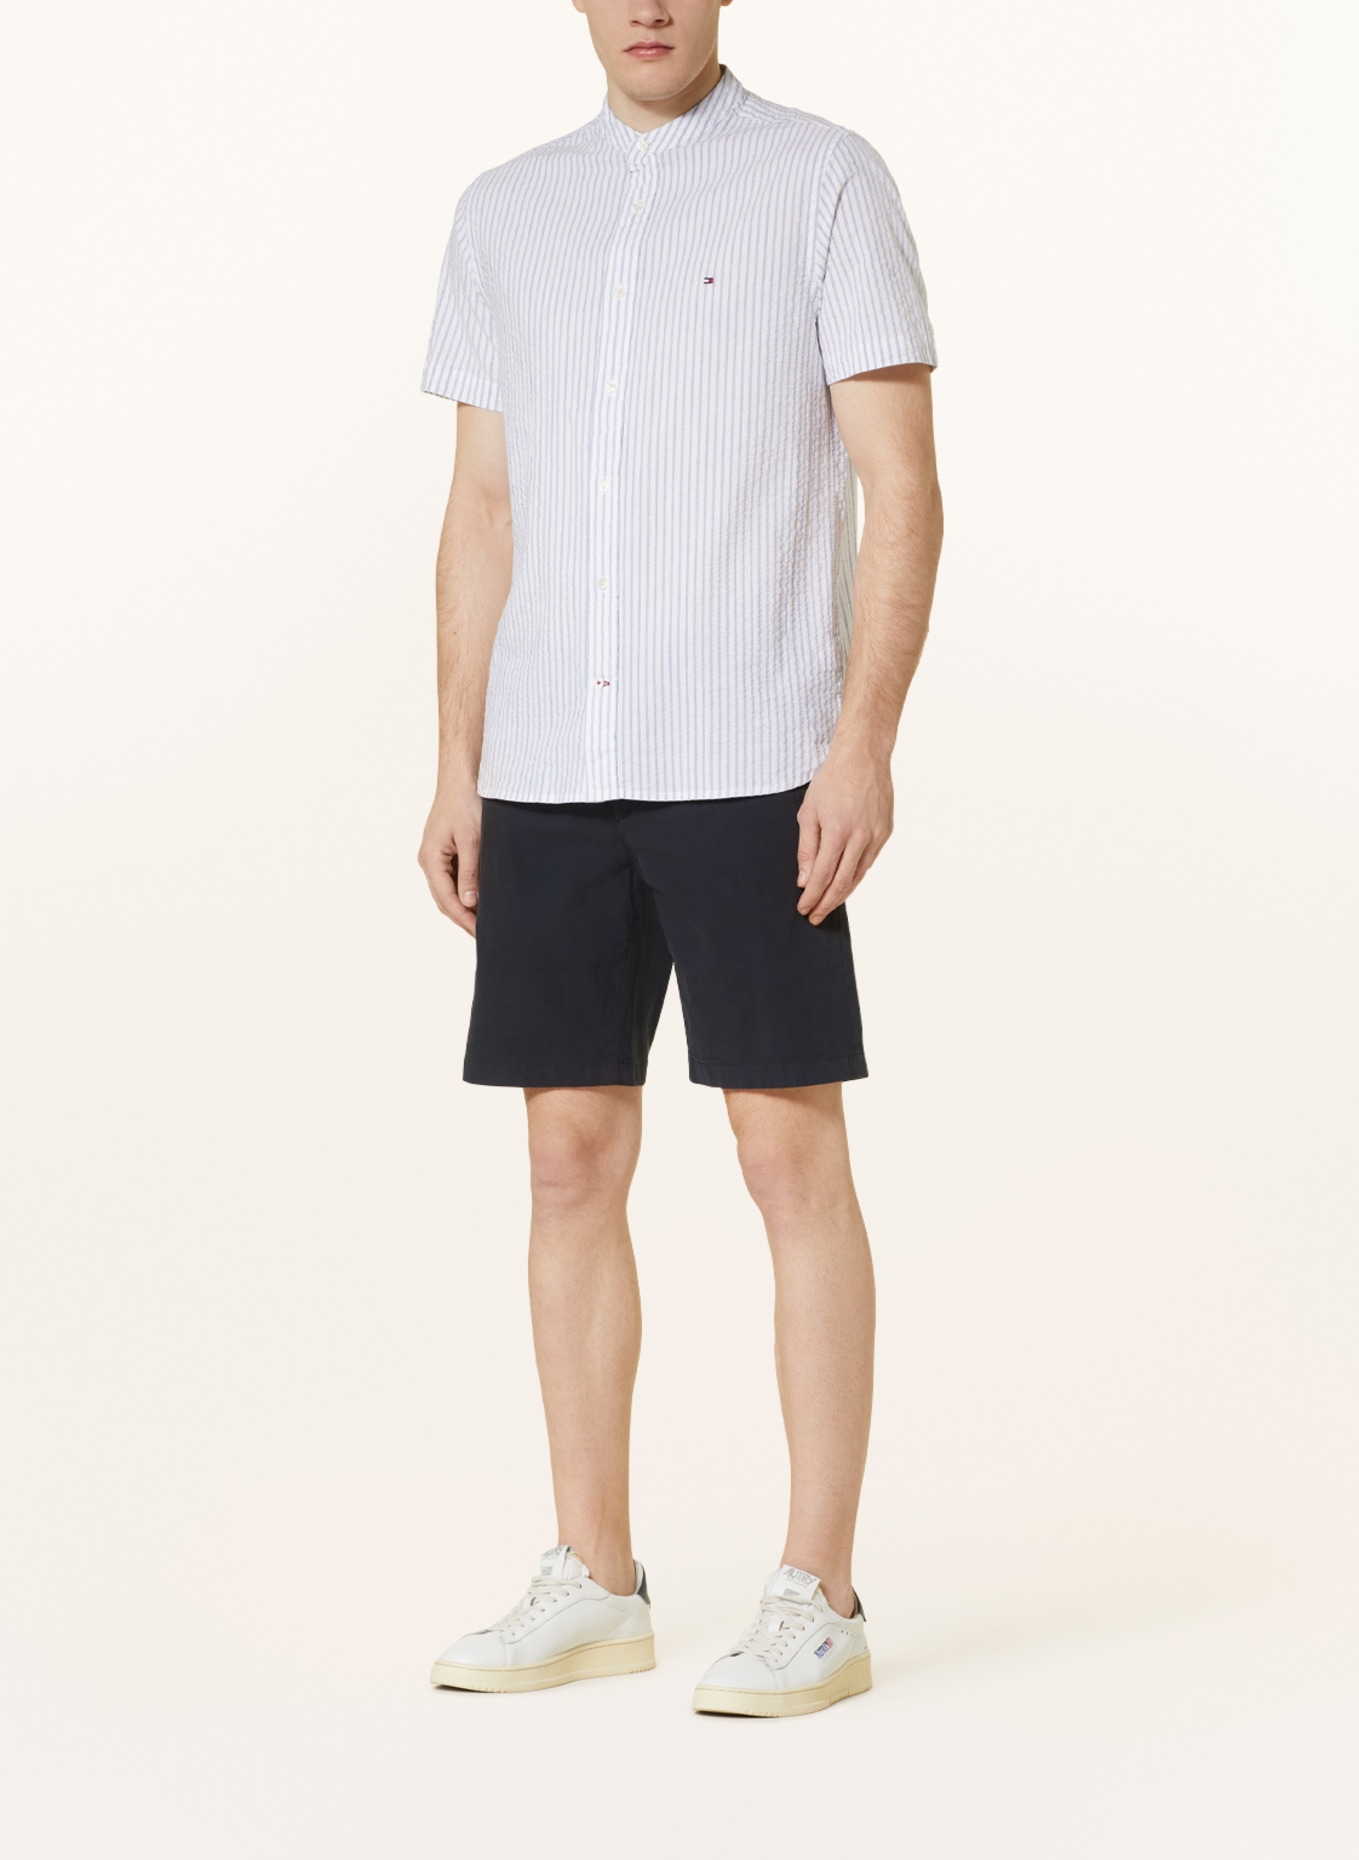 TOMMY HILFIGER Short sleeve shirt regular fit, Color: LIGHT BLUE/ WHITE (Image 2)